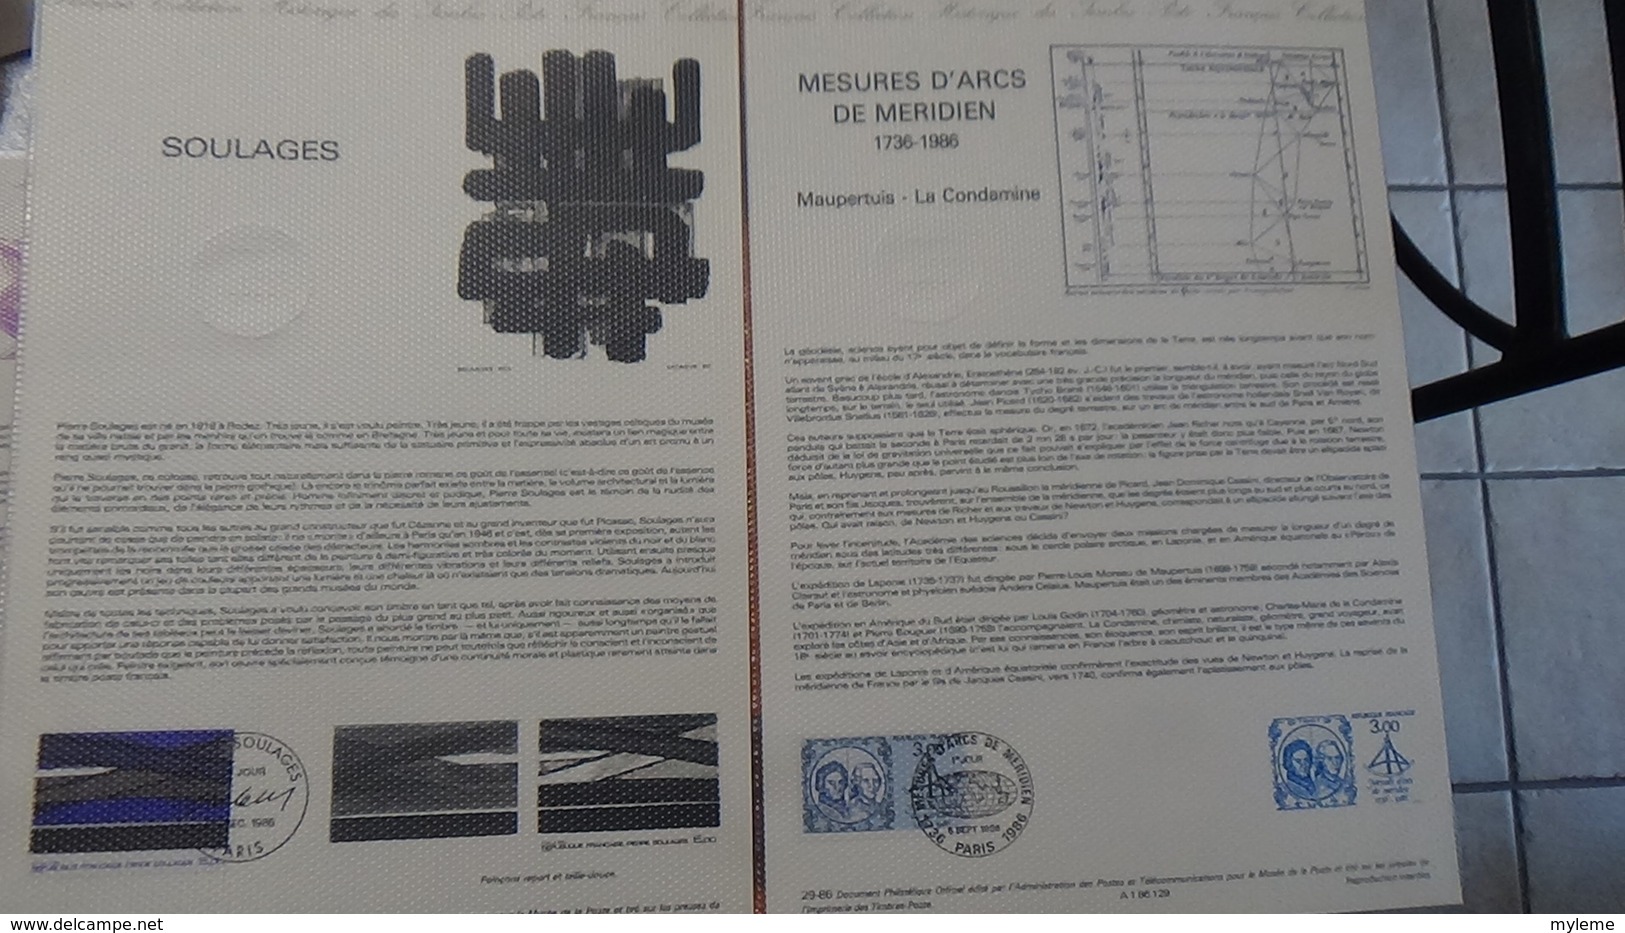 Lot de 39 documents philatéliques de 1986 Côte catalogue 2003 : 438 euros.PORT 8.95€ OFFERT. A saisir !!!